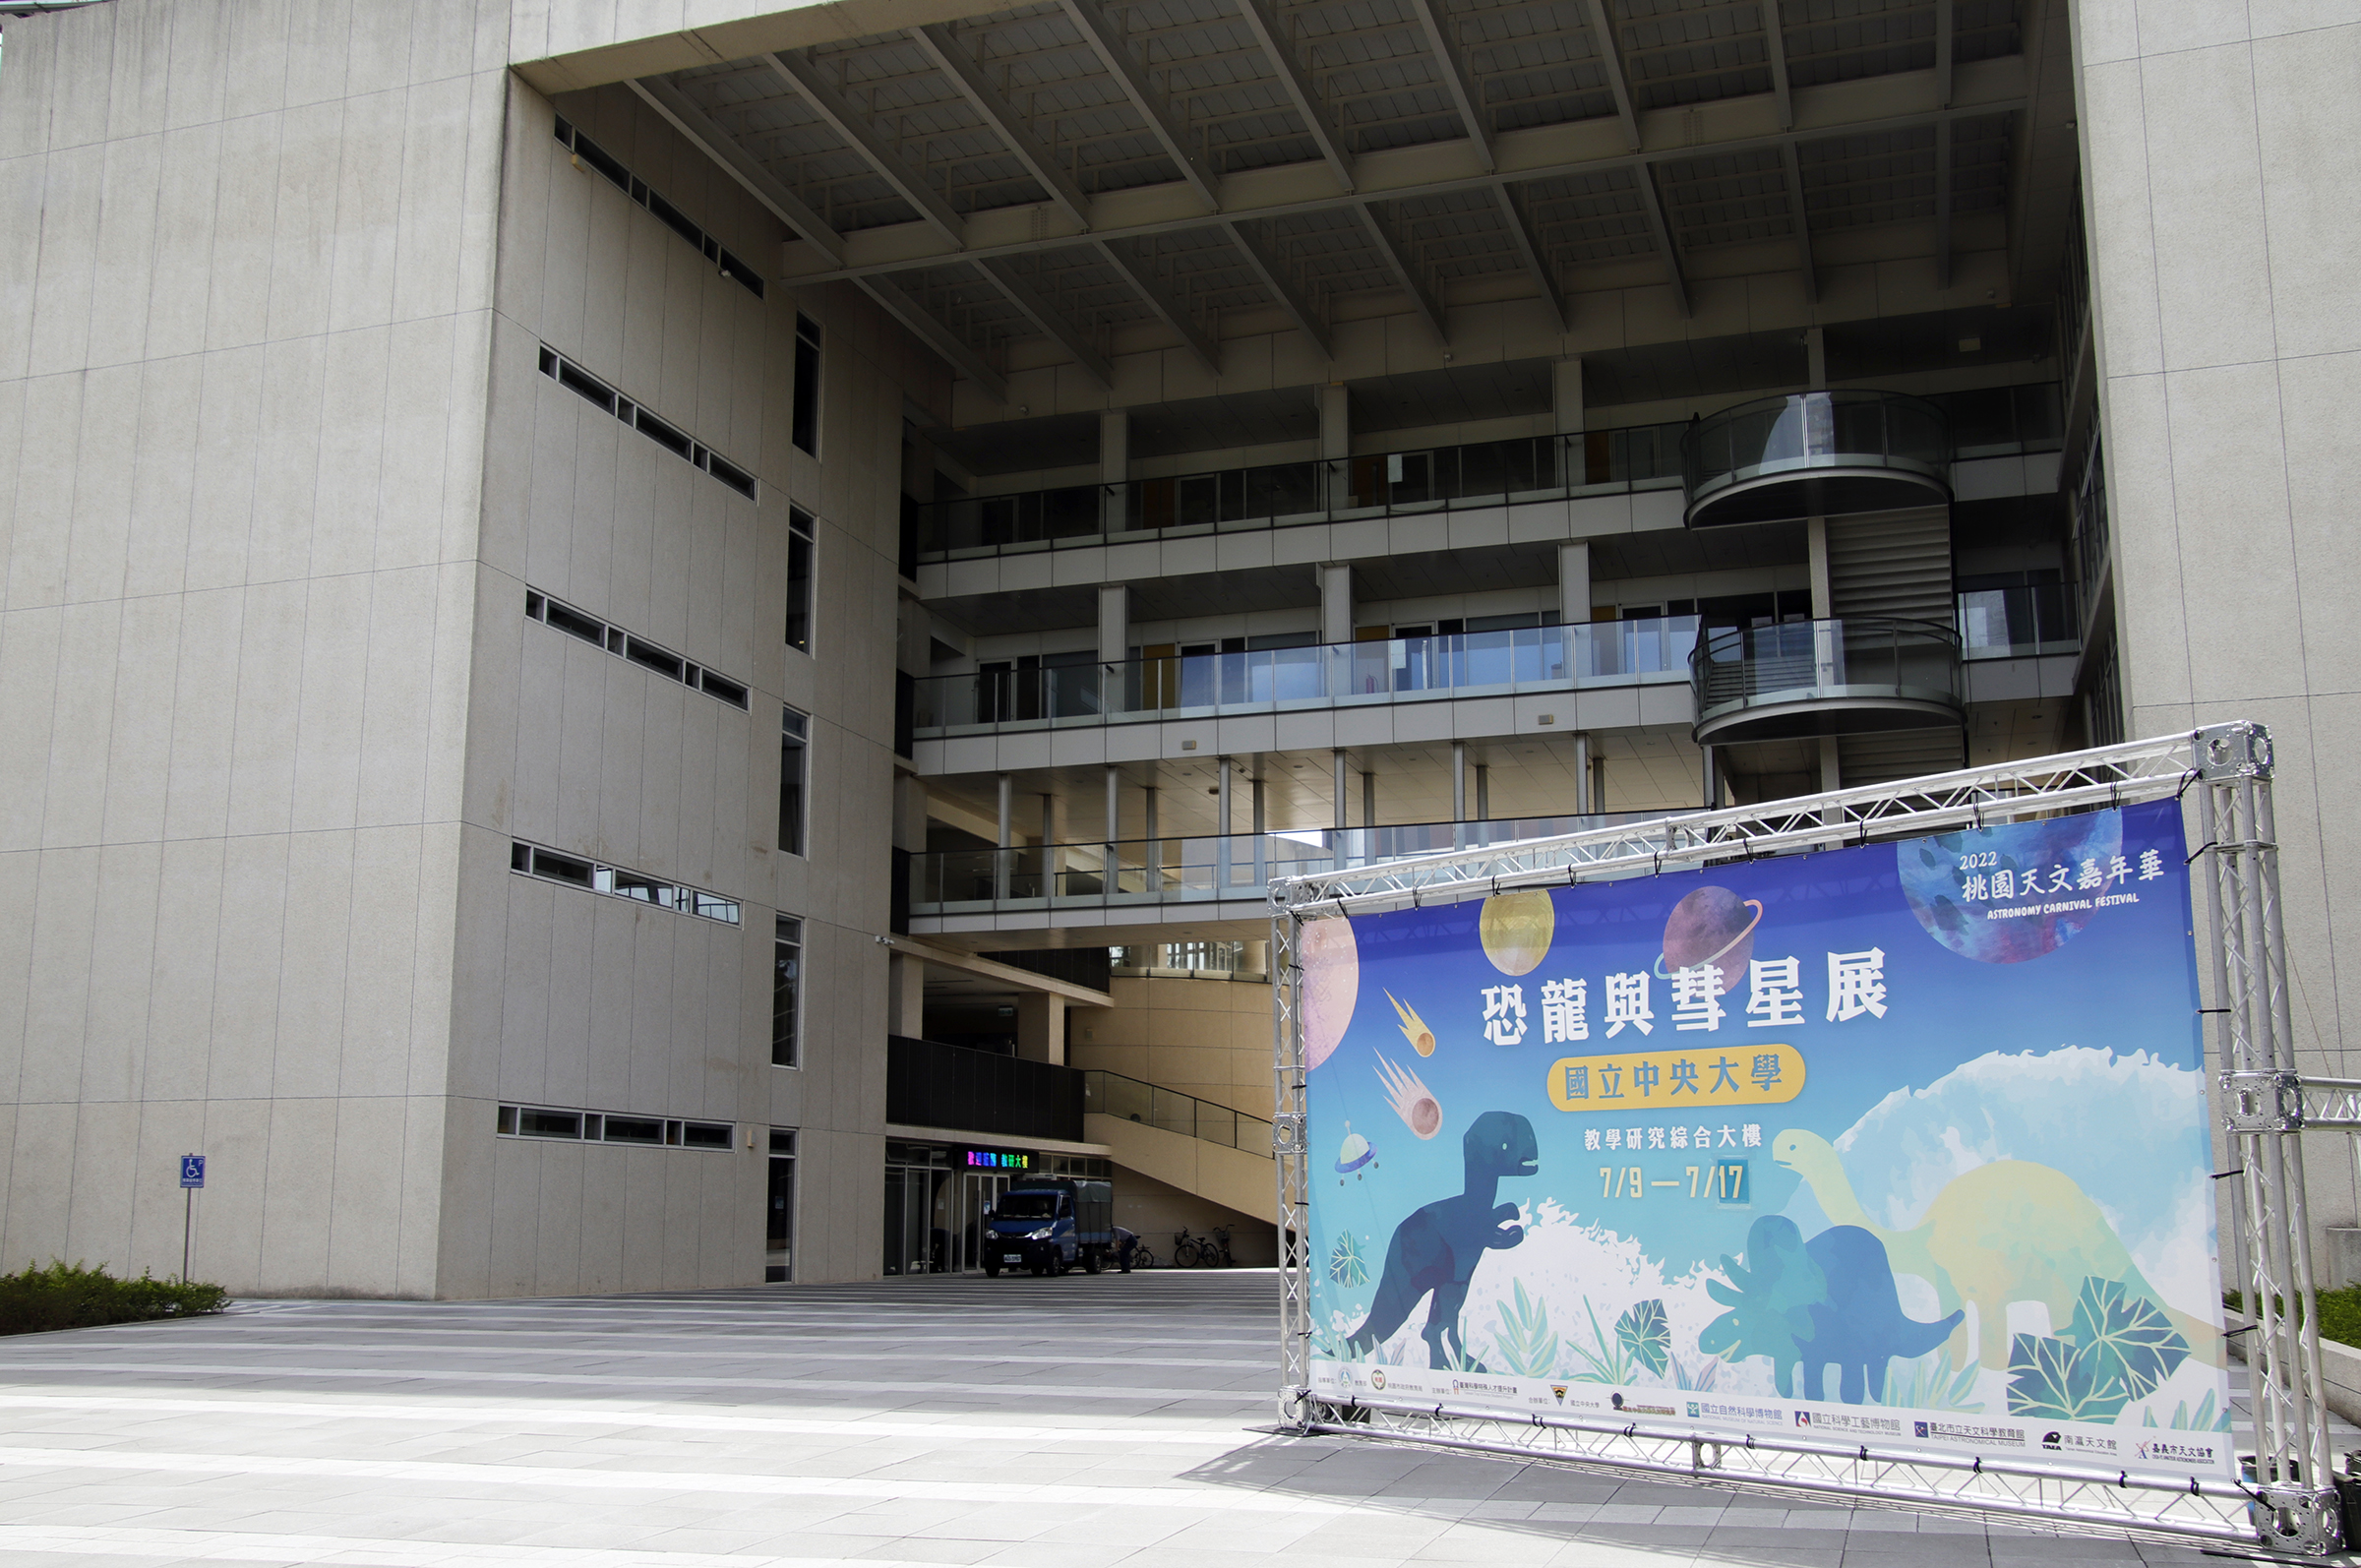 「恐龍與彗星展」在中央大學教學研究綜合大樓一樓展示館展出，至7月17日下午四點截止，歡迎免費參觀。陳如枝攝